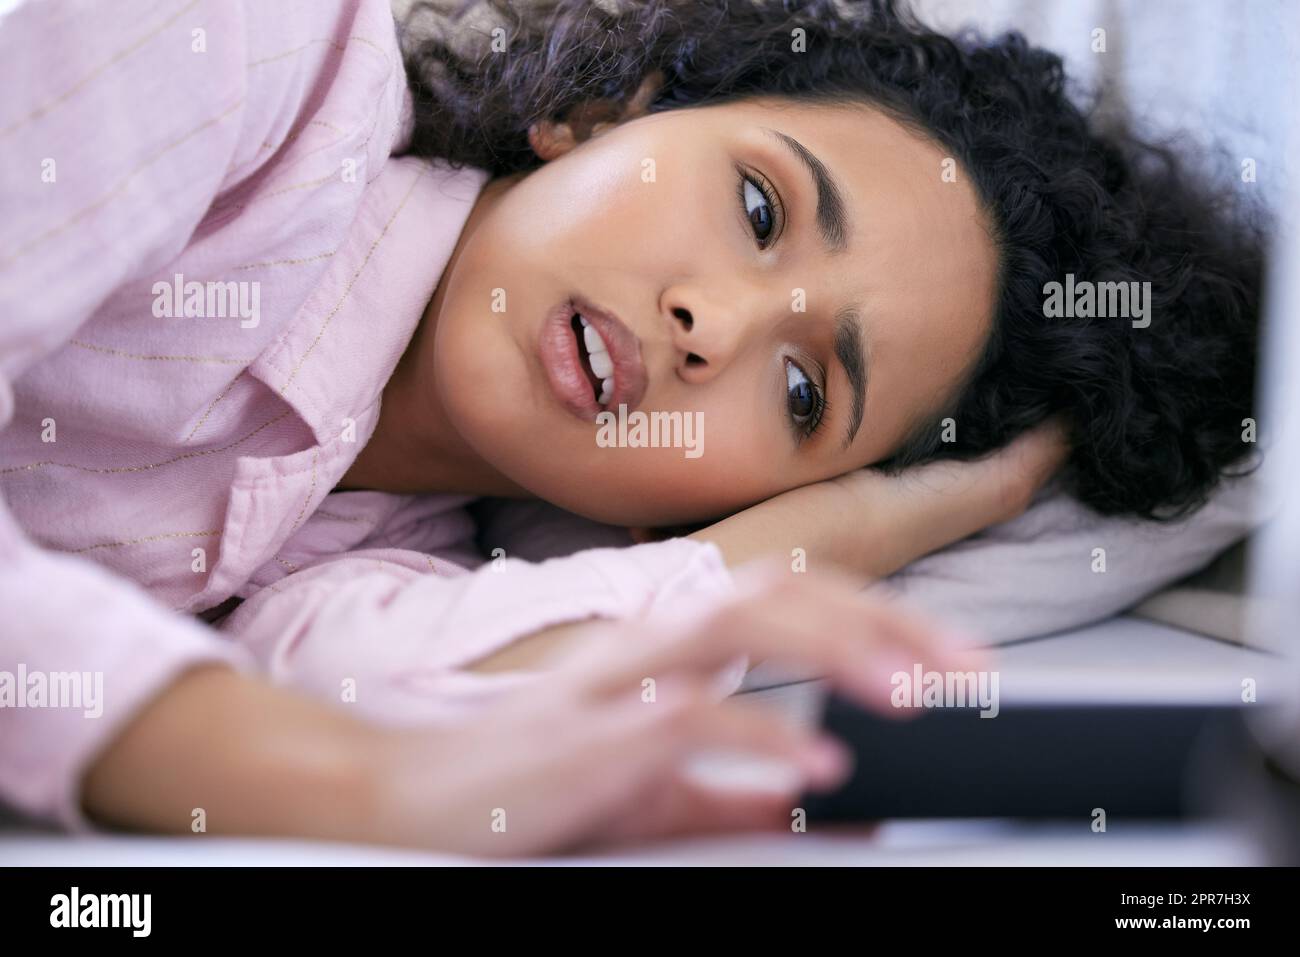 Im impostare la mia sveglia un po 'più tardi. Una giovane donna che controlla il suo telefono mentre si trova nel suo letto. Foto Stock